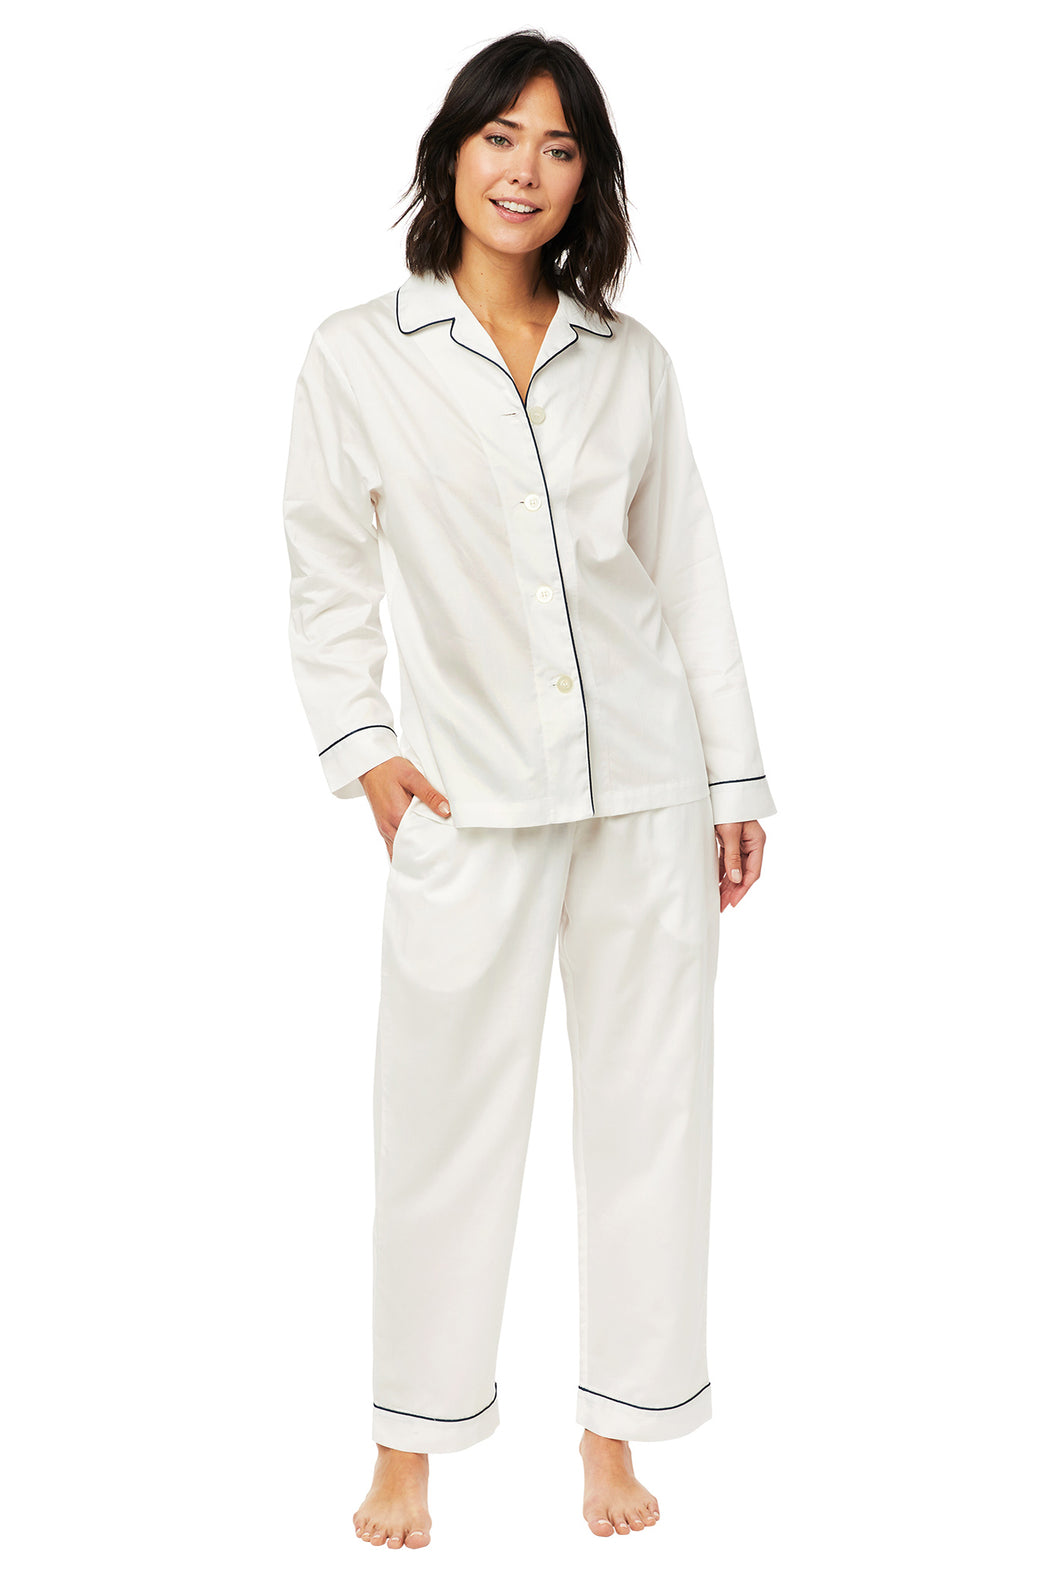 The-Cats-Pajamas -Classic-White-Luxe-Pima-Pajama-Set